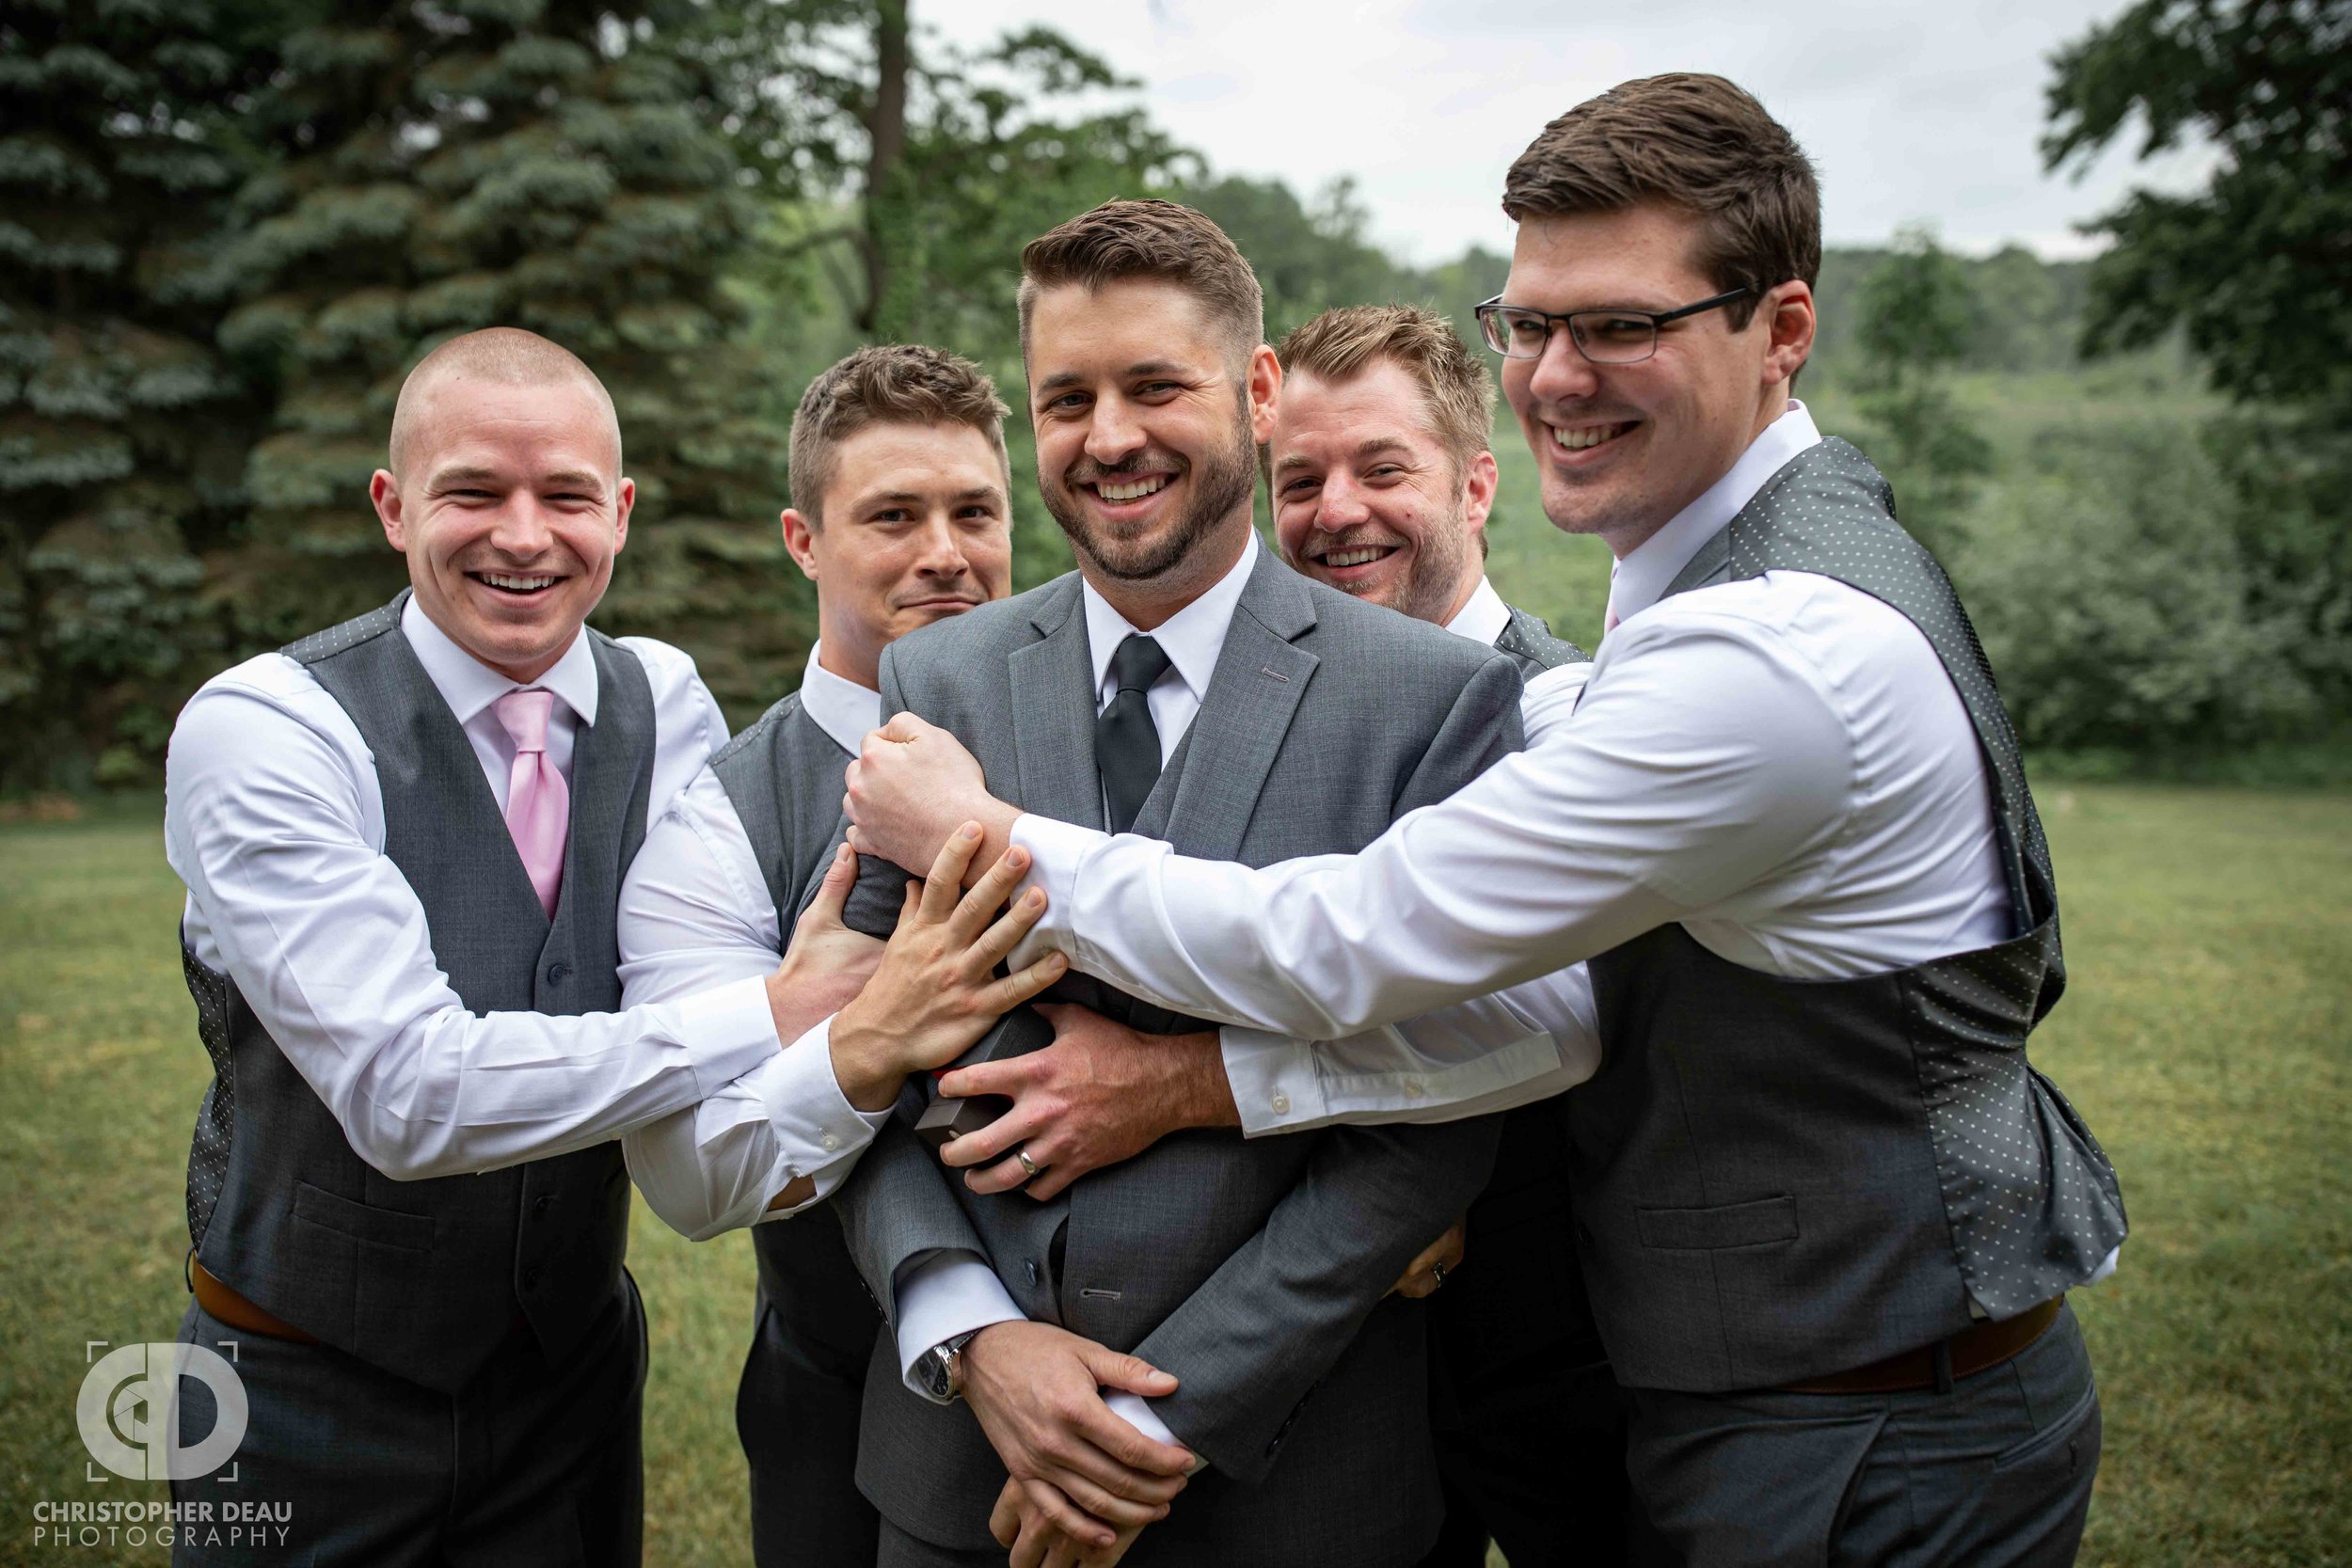  groomsmen hugging the groom 